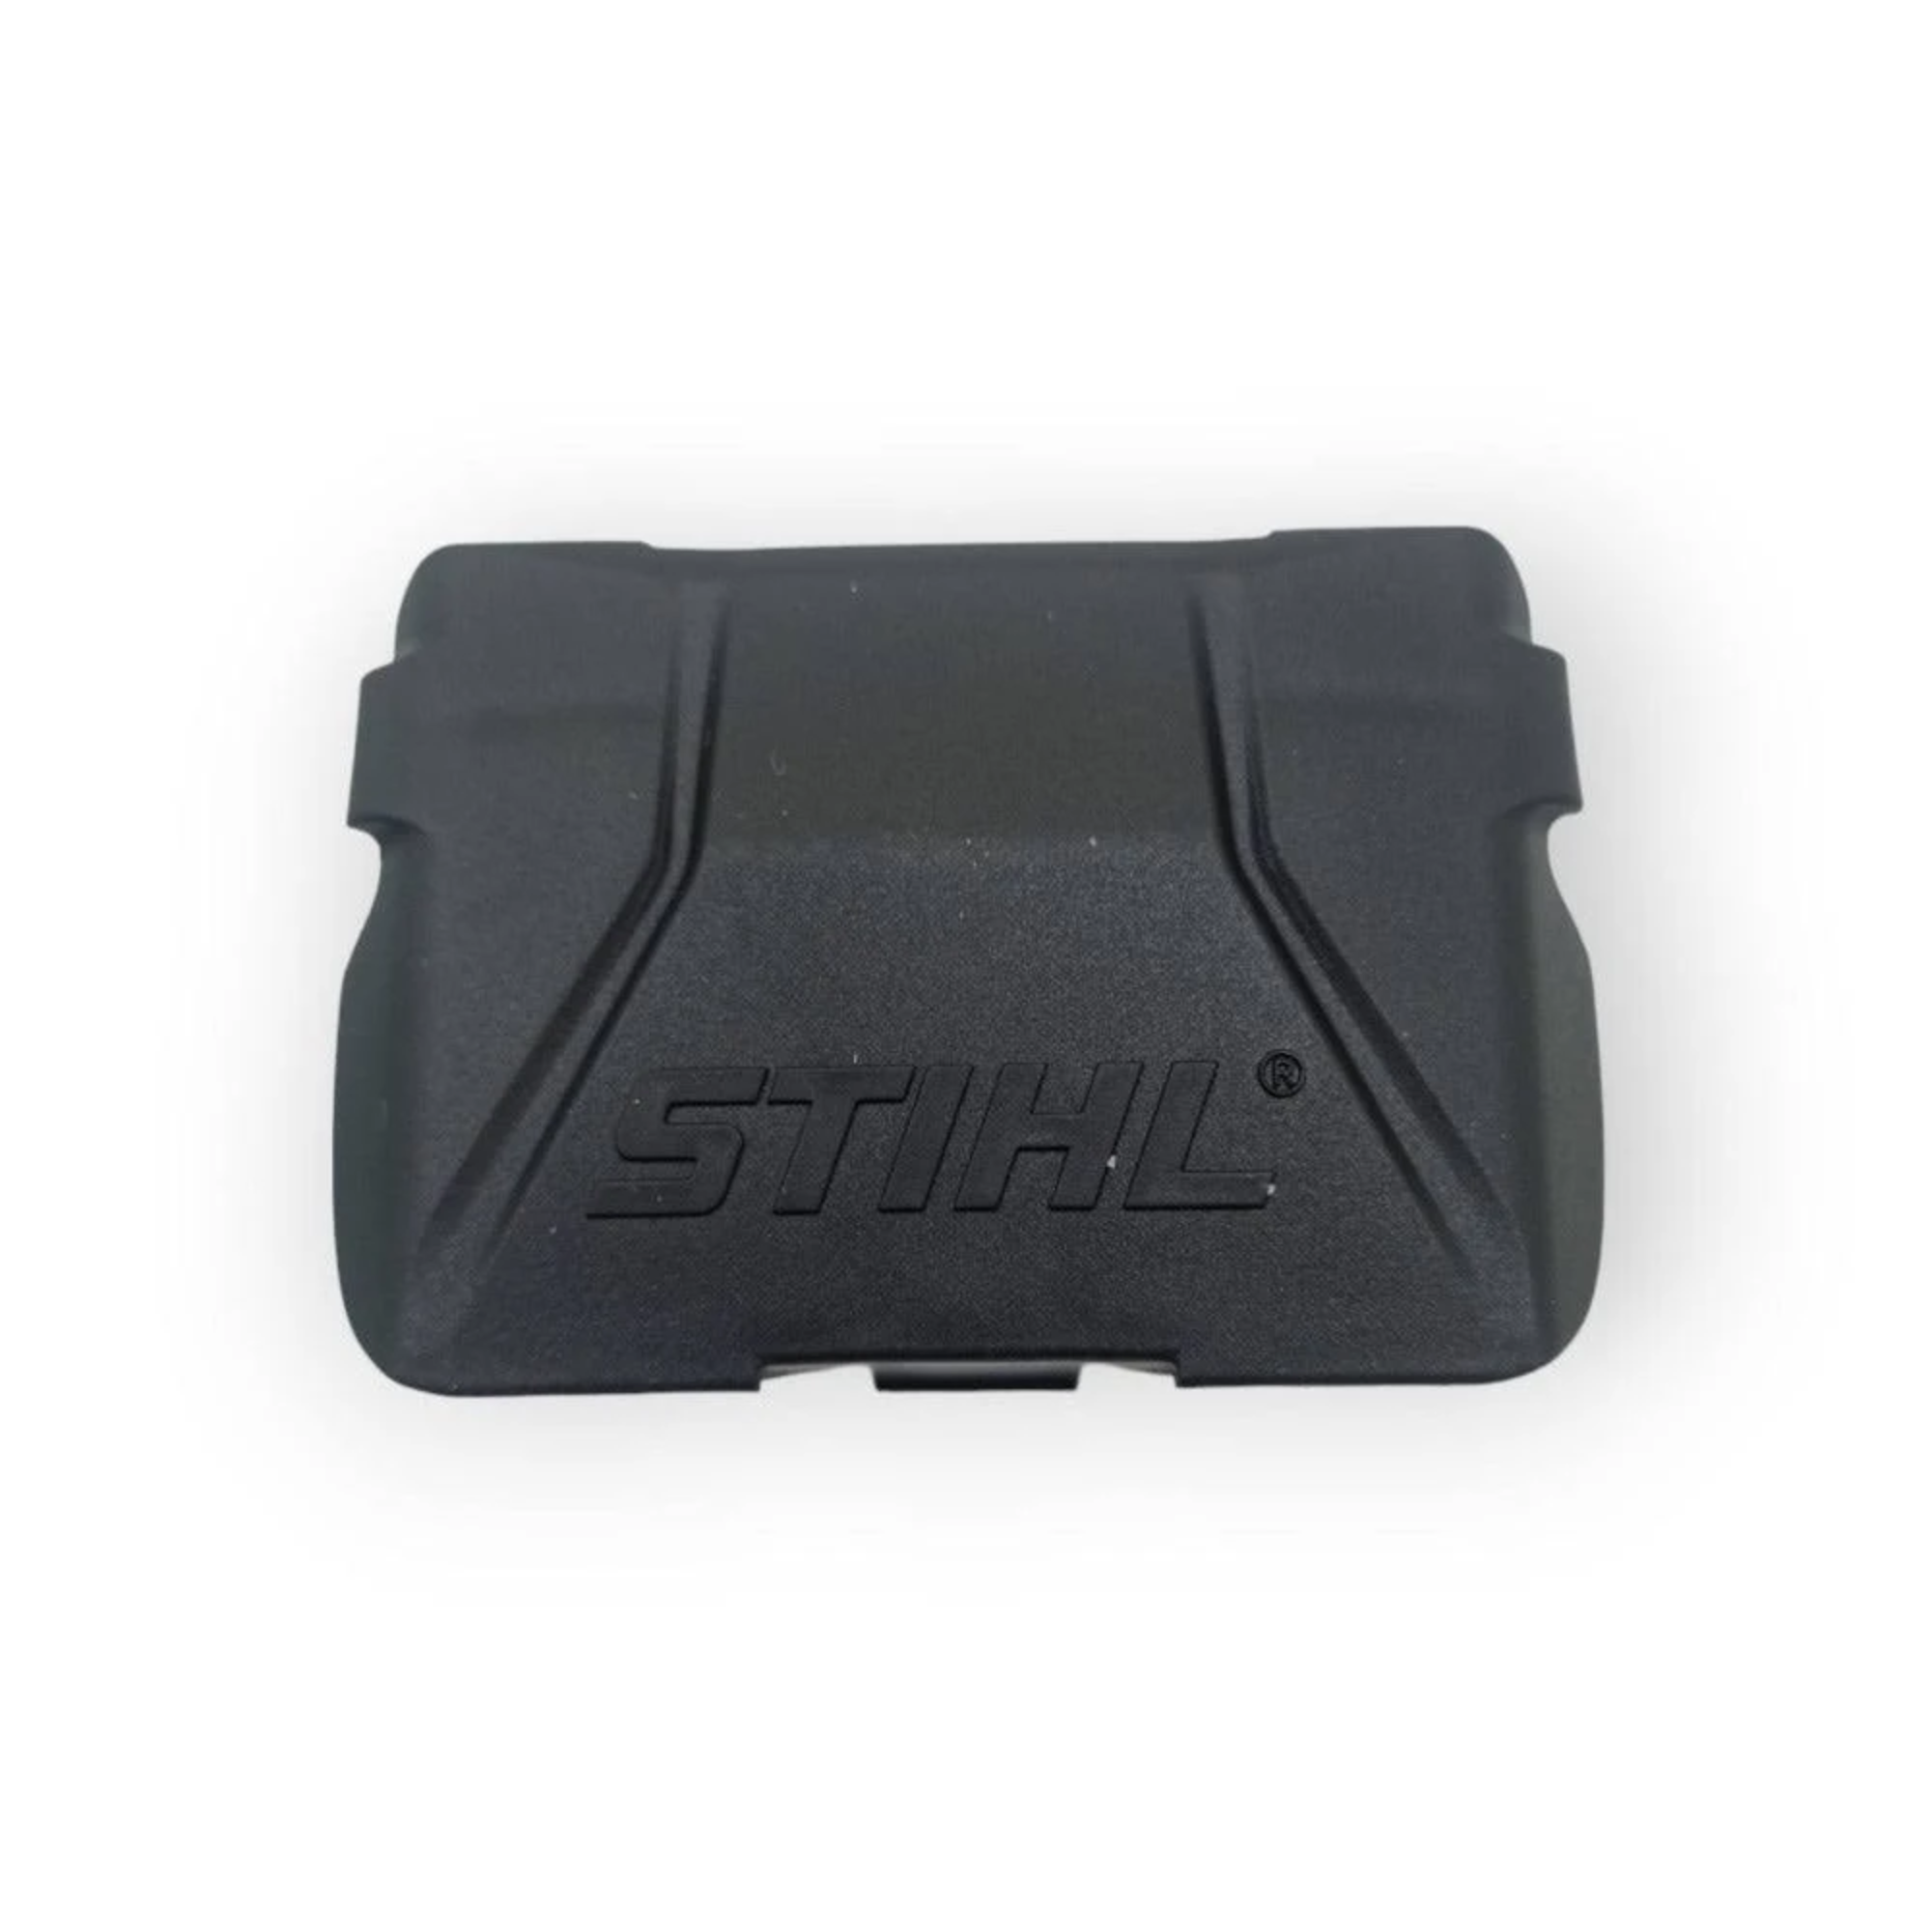 Stihl AK Battery Cover | 4520 602 0900